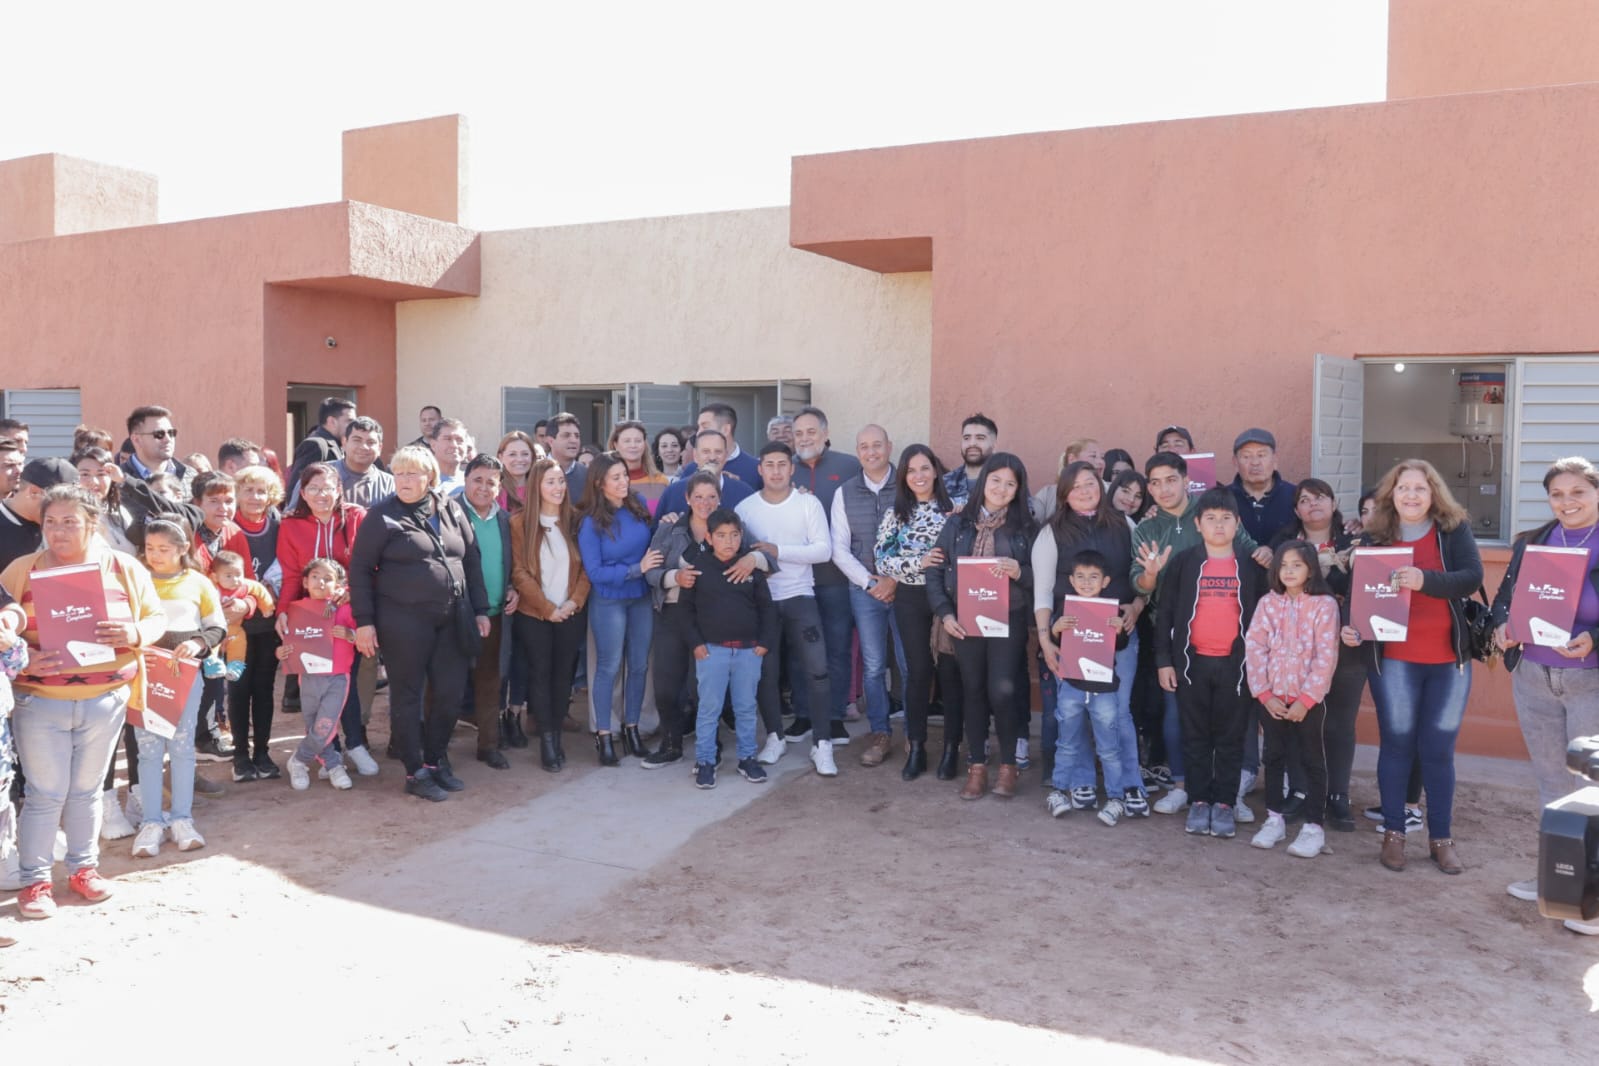 El gobernador entregó las llaves de su nuevo hogar a familias de Arauco